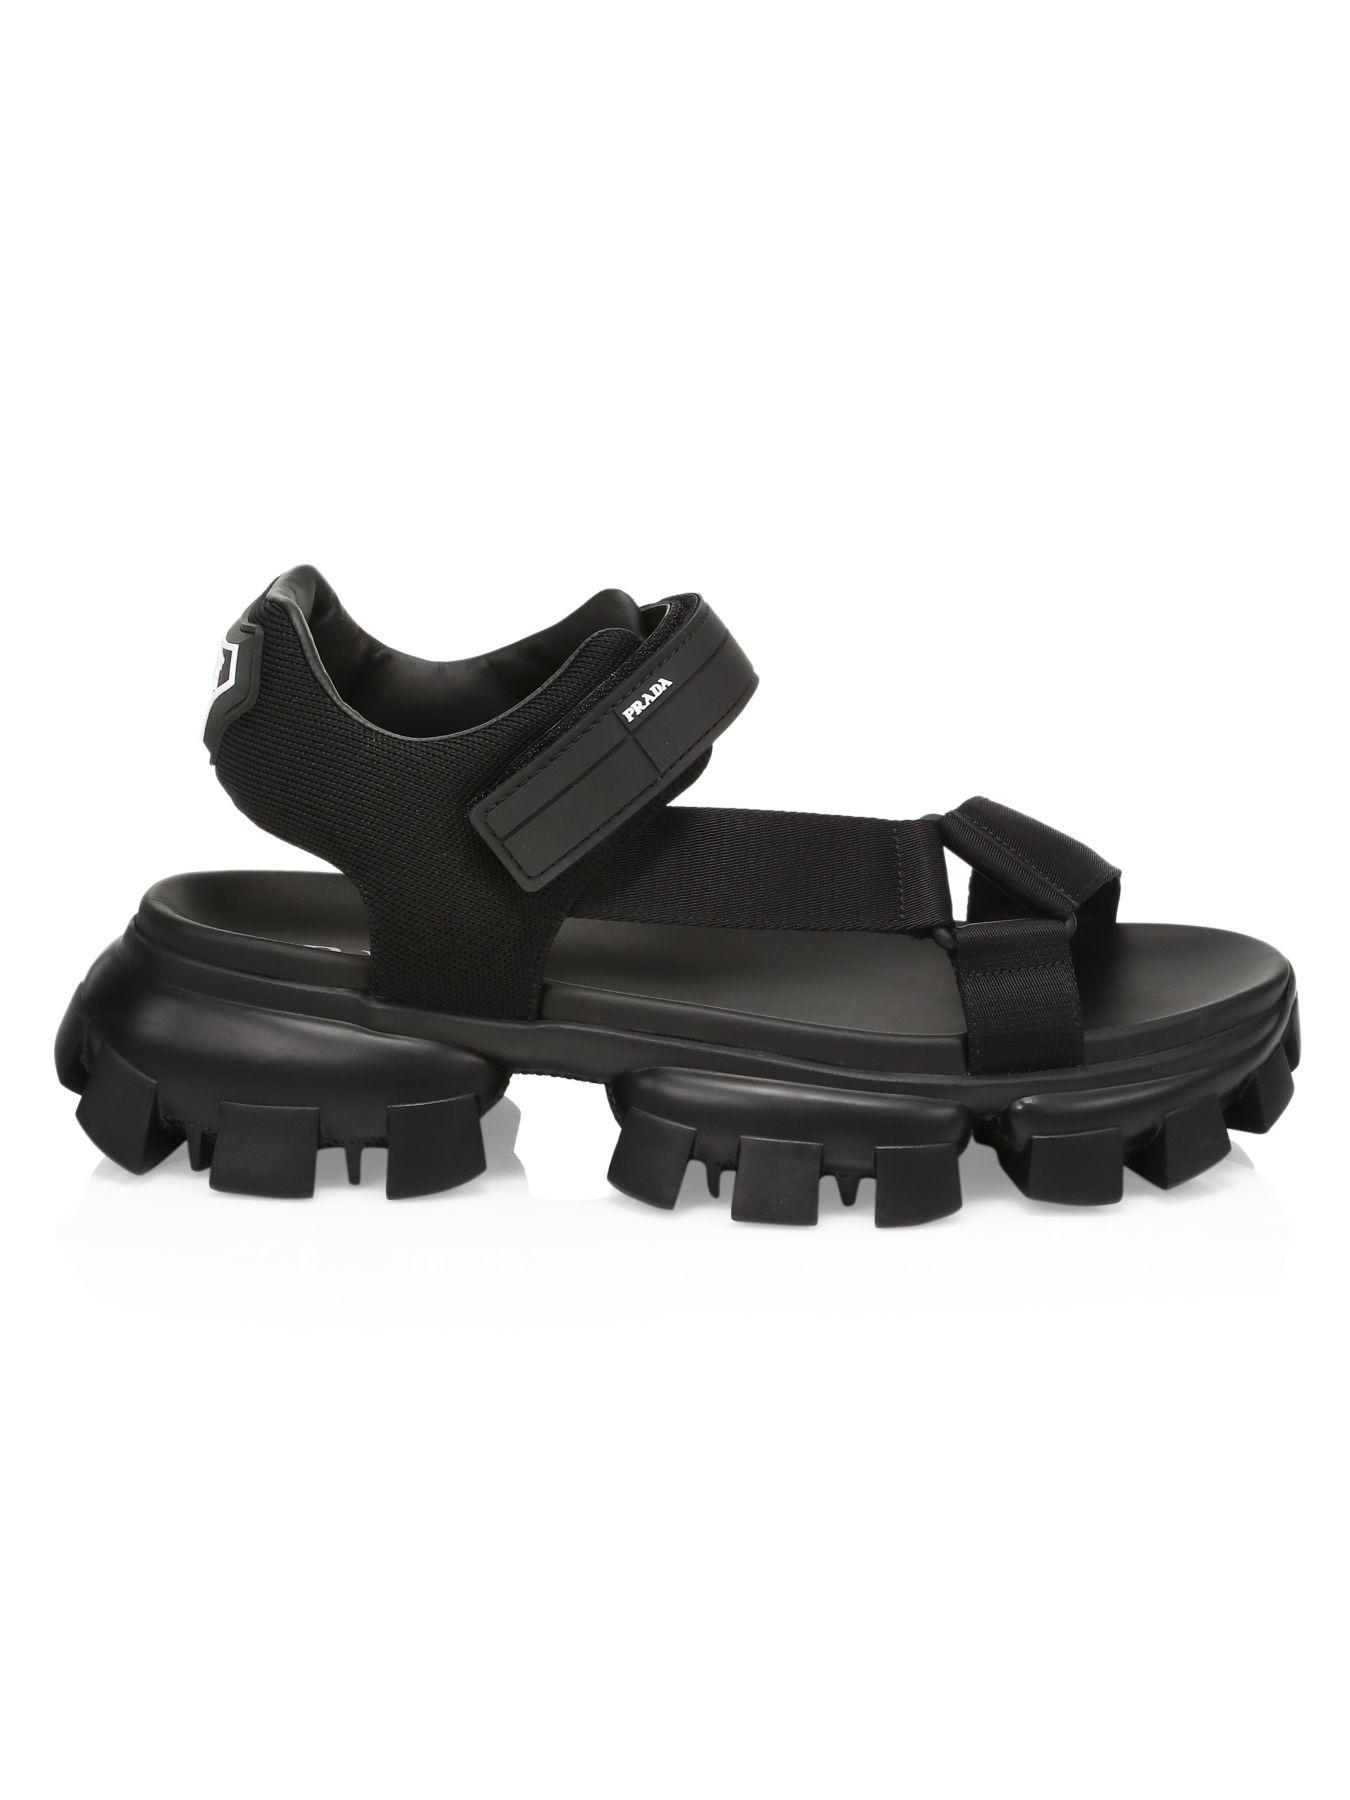 Prada Leather Nastro & Maglia Tech Sandals in Nero (Black) for Men - Lyst